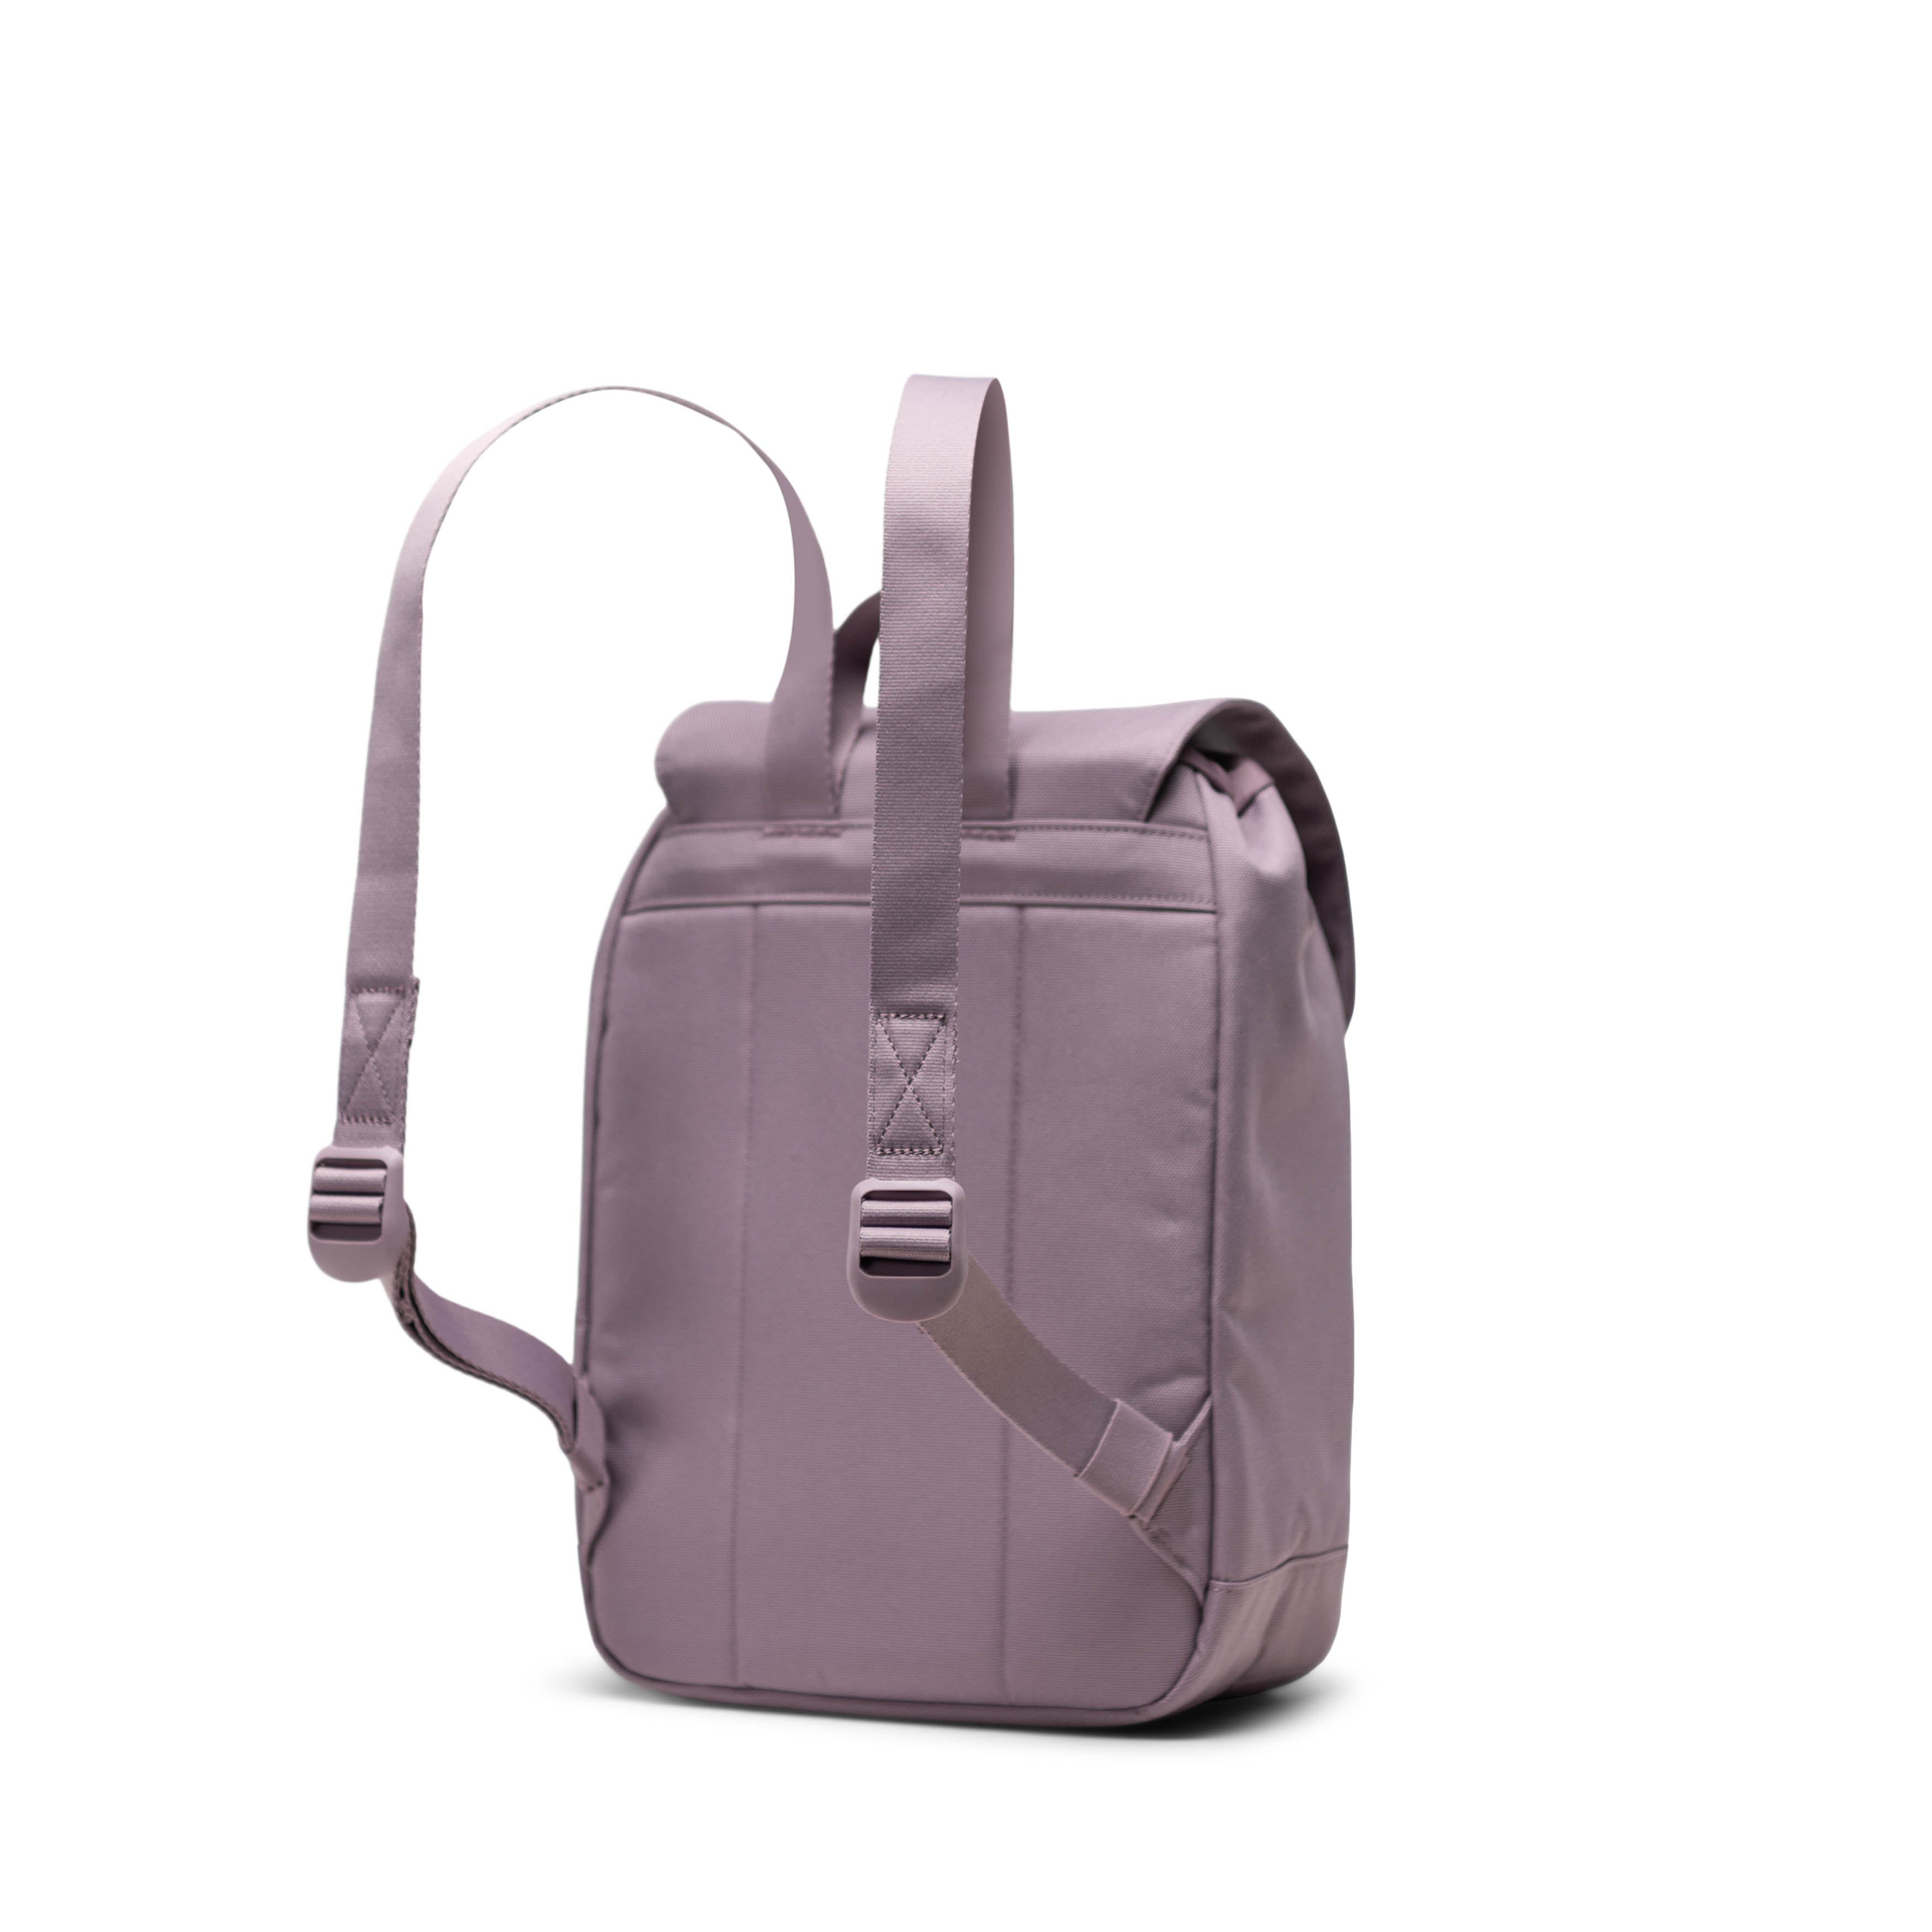 Retreat Backpack - Mini